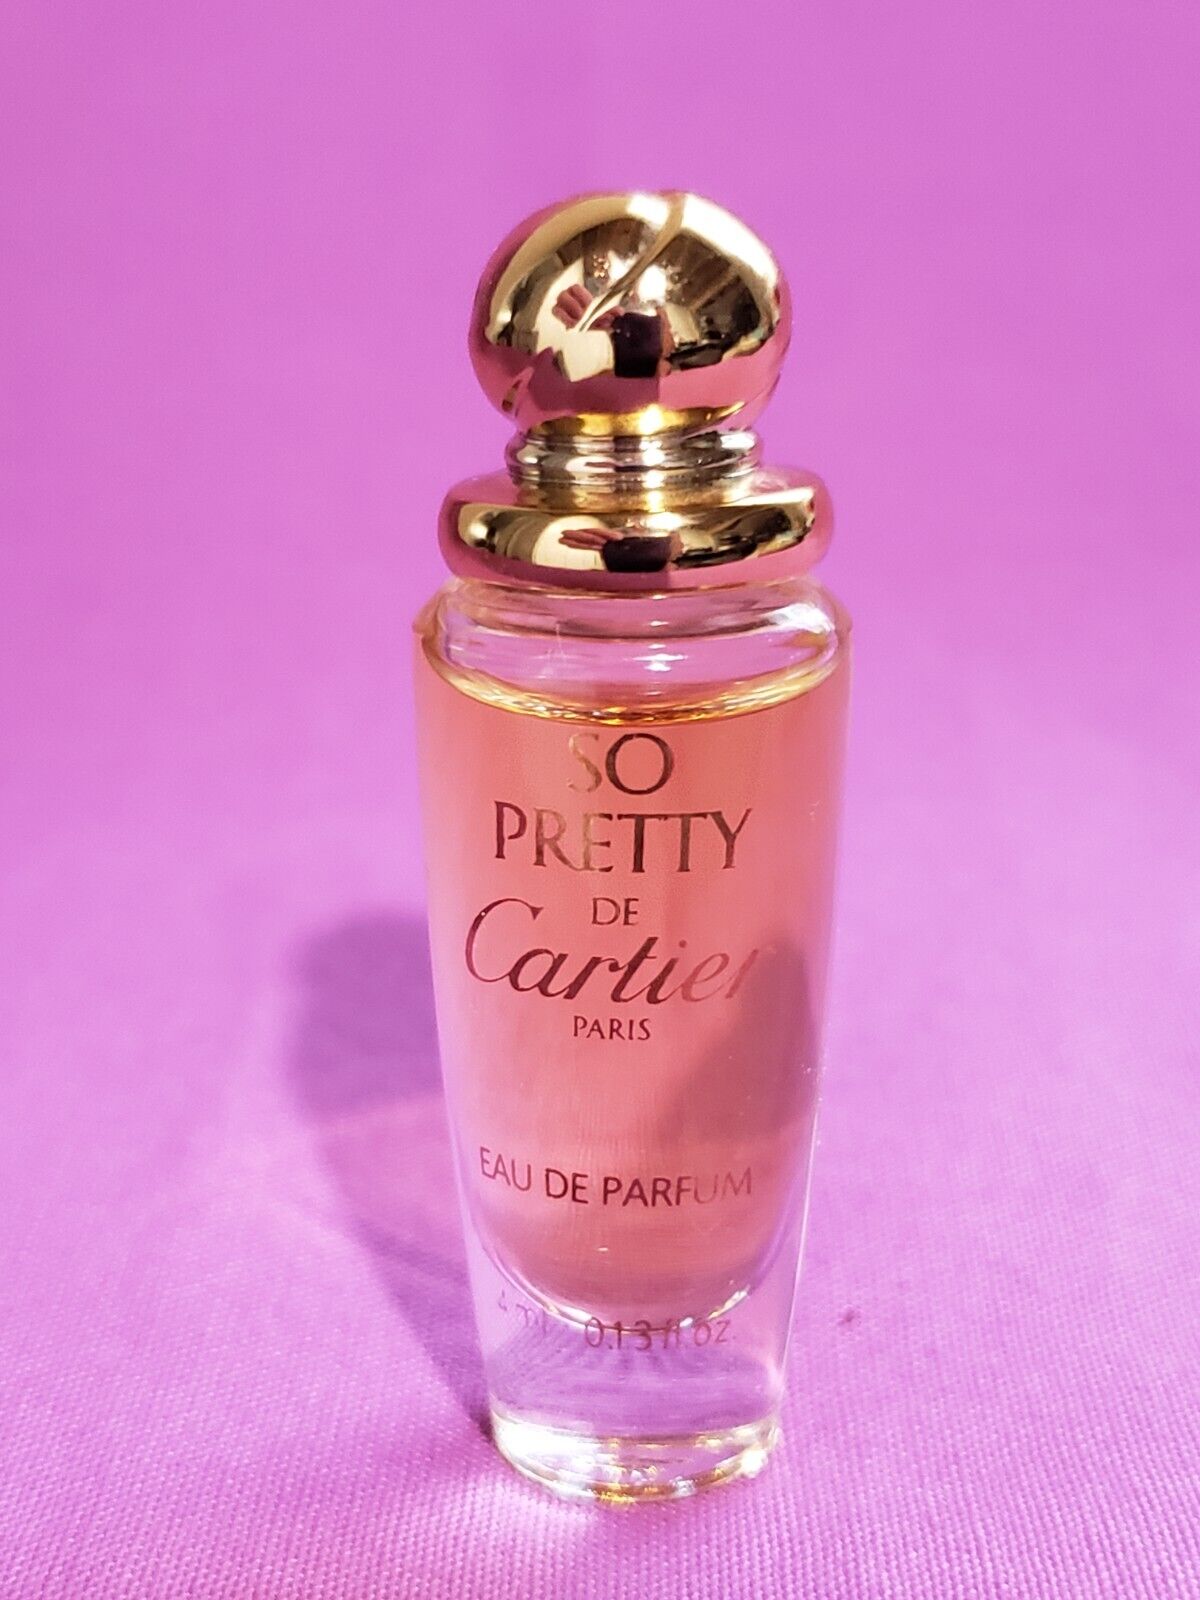 Vintage 1990s So Pretty Eau de Parfum Cartier Mini   4ml .13 fl.oz  AUTHENTIC